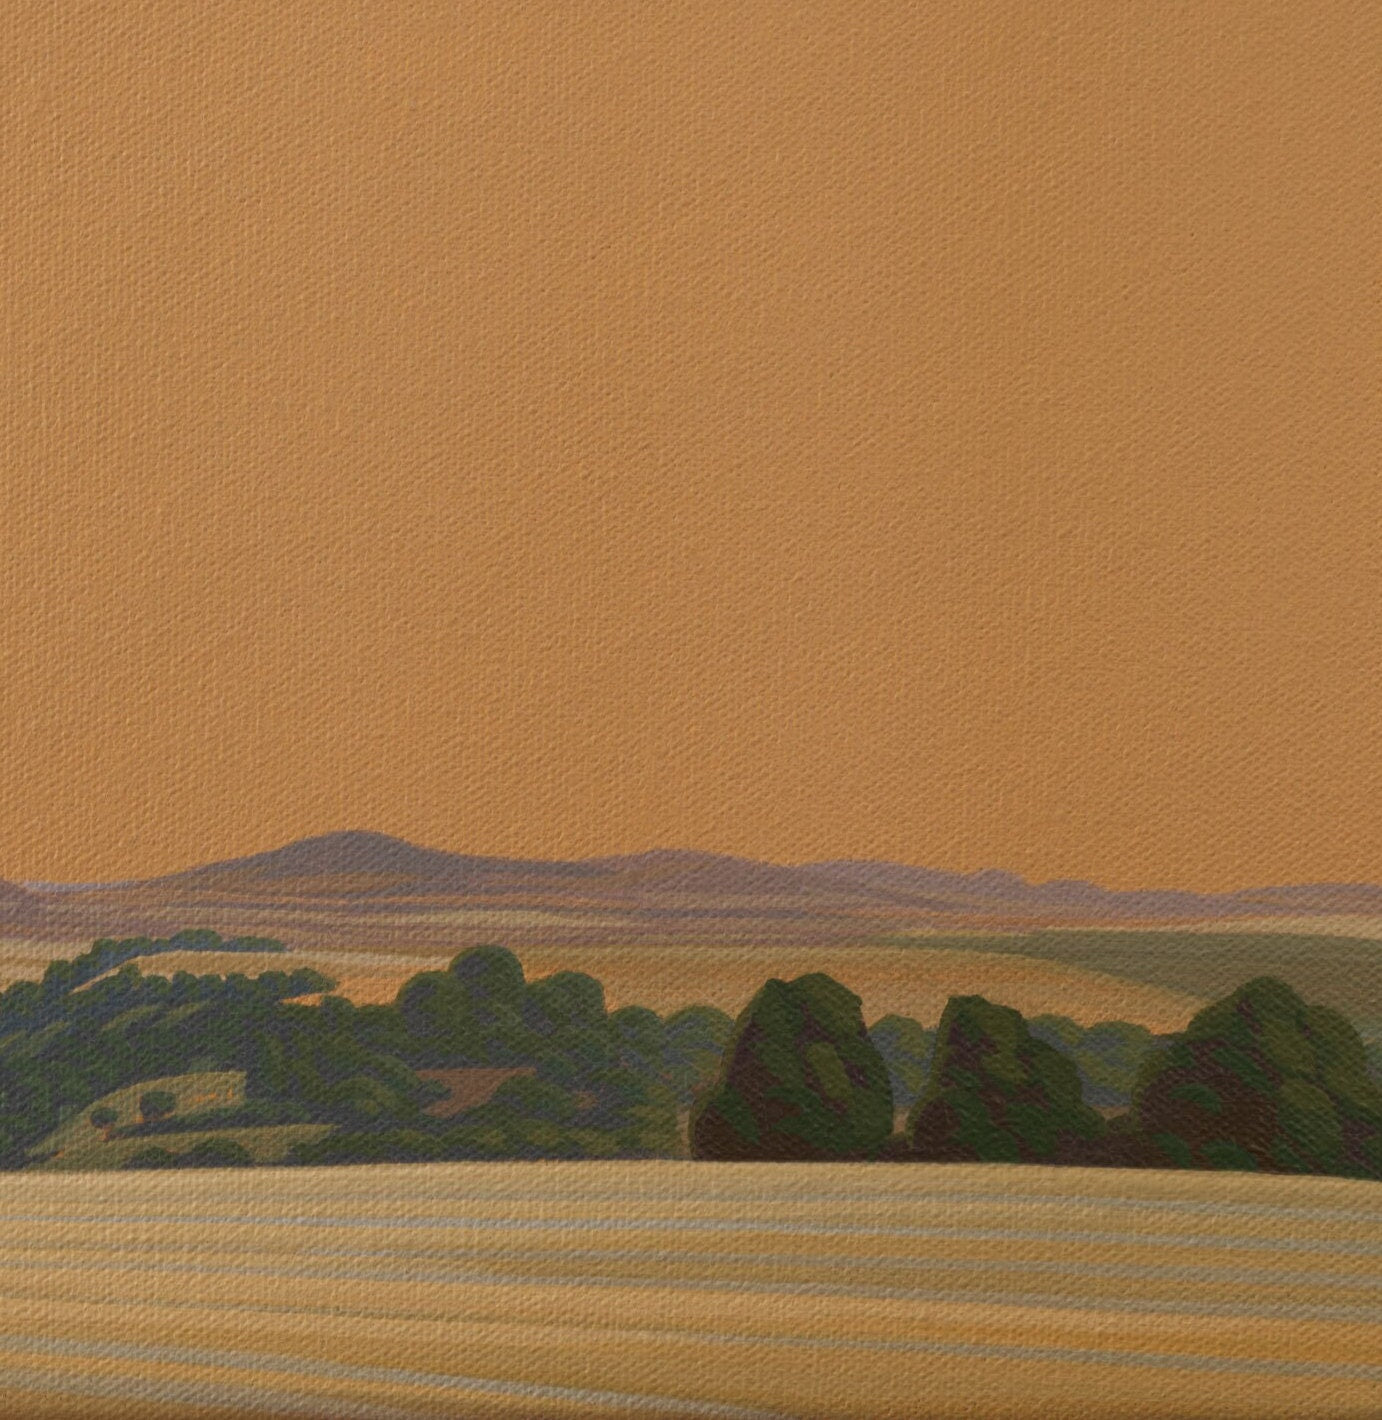 Leinwandbild – Brillanter Kunstdruck – 20x20 cm – uv-beständig – Landschaft mit goldenem Himmel